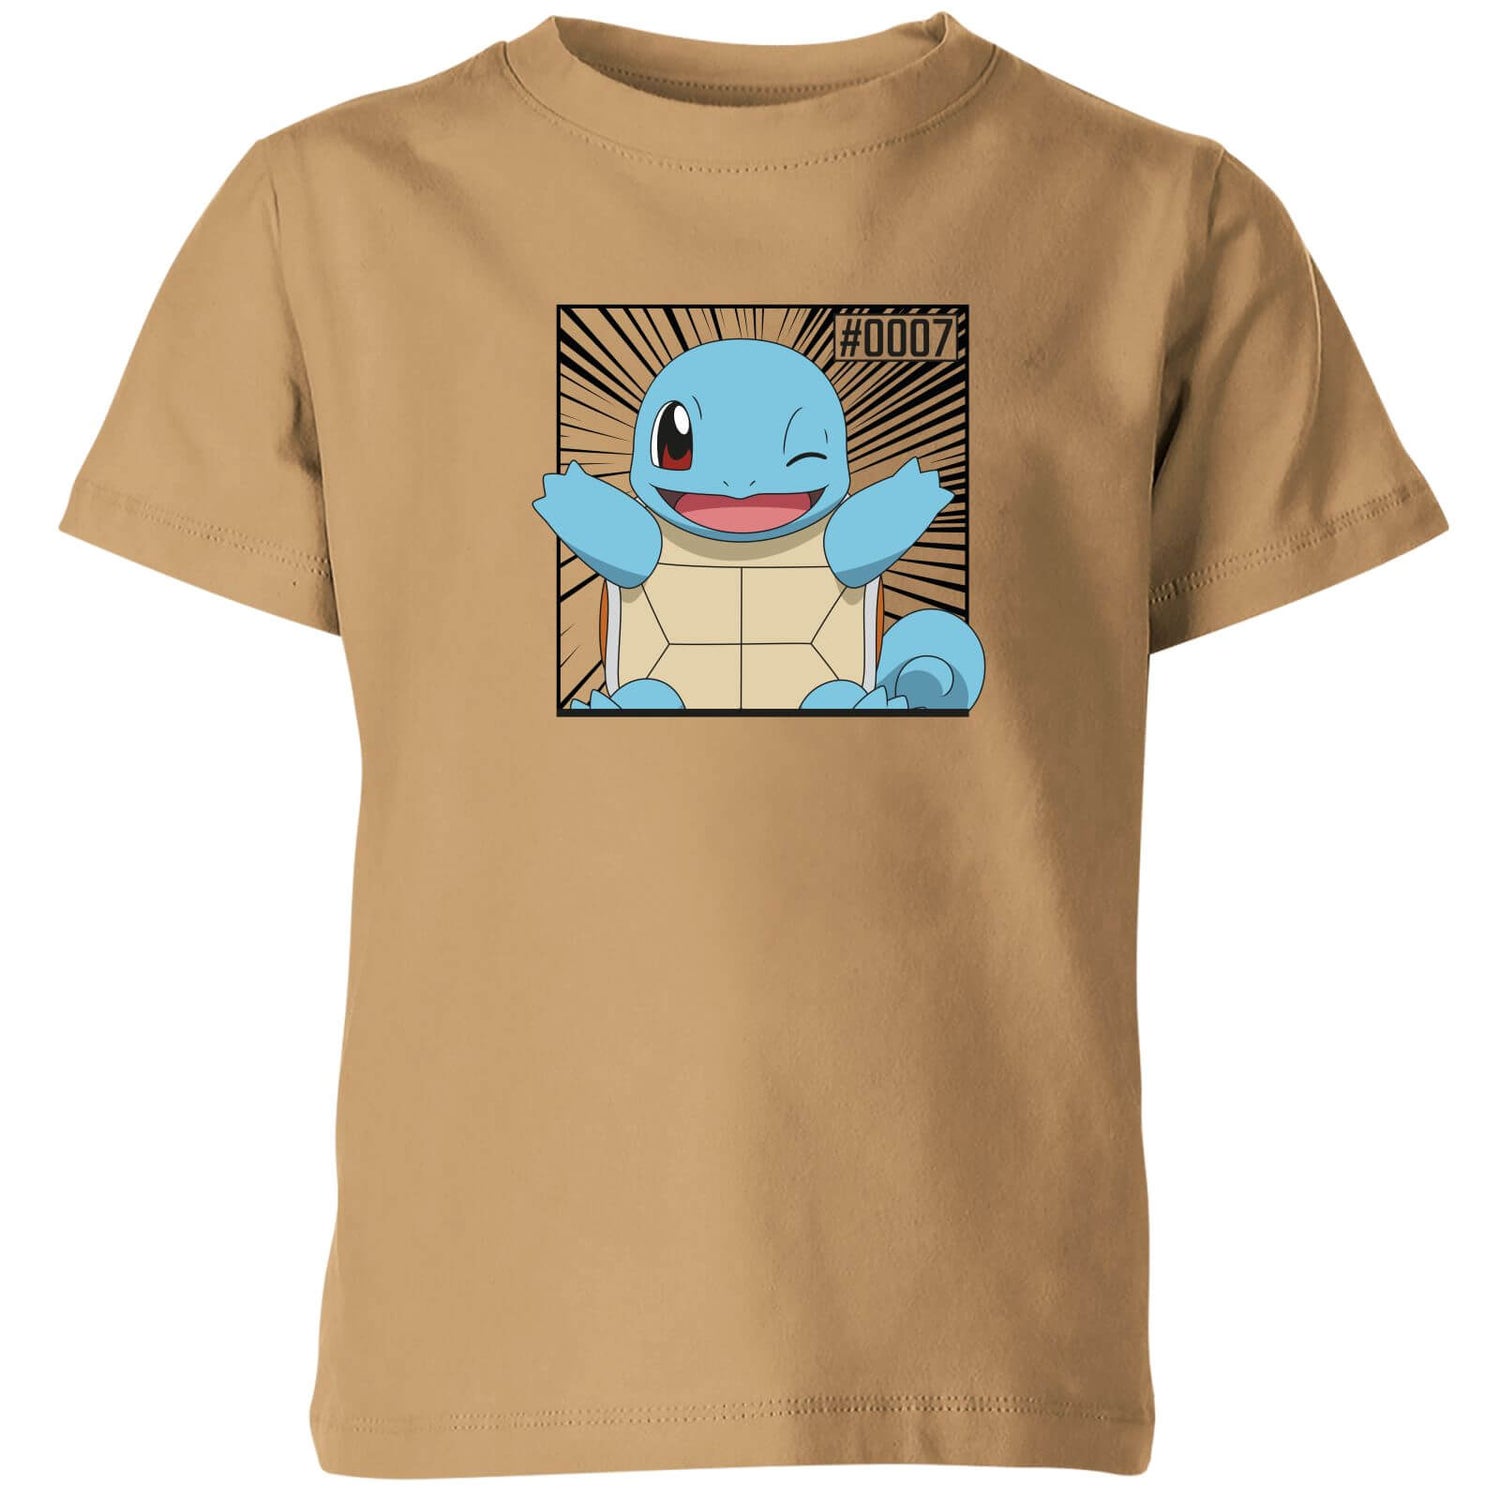 Pokémon Pokédex Squirtle #0007 Camiseta Niño - Tostado